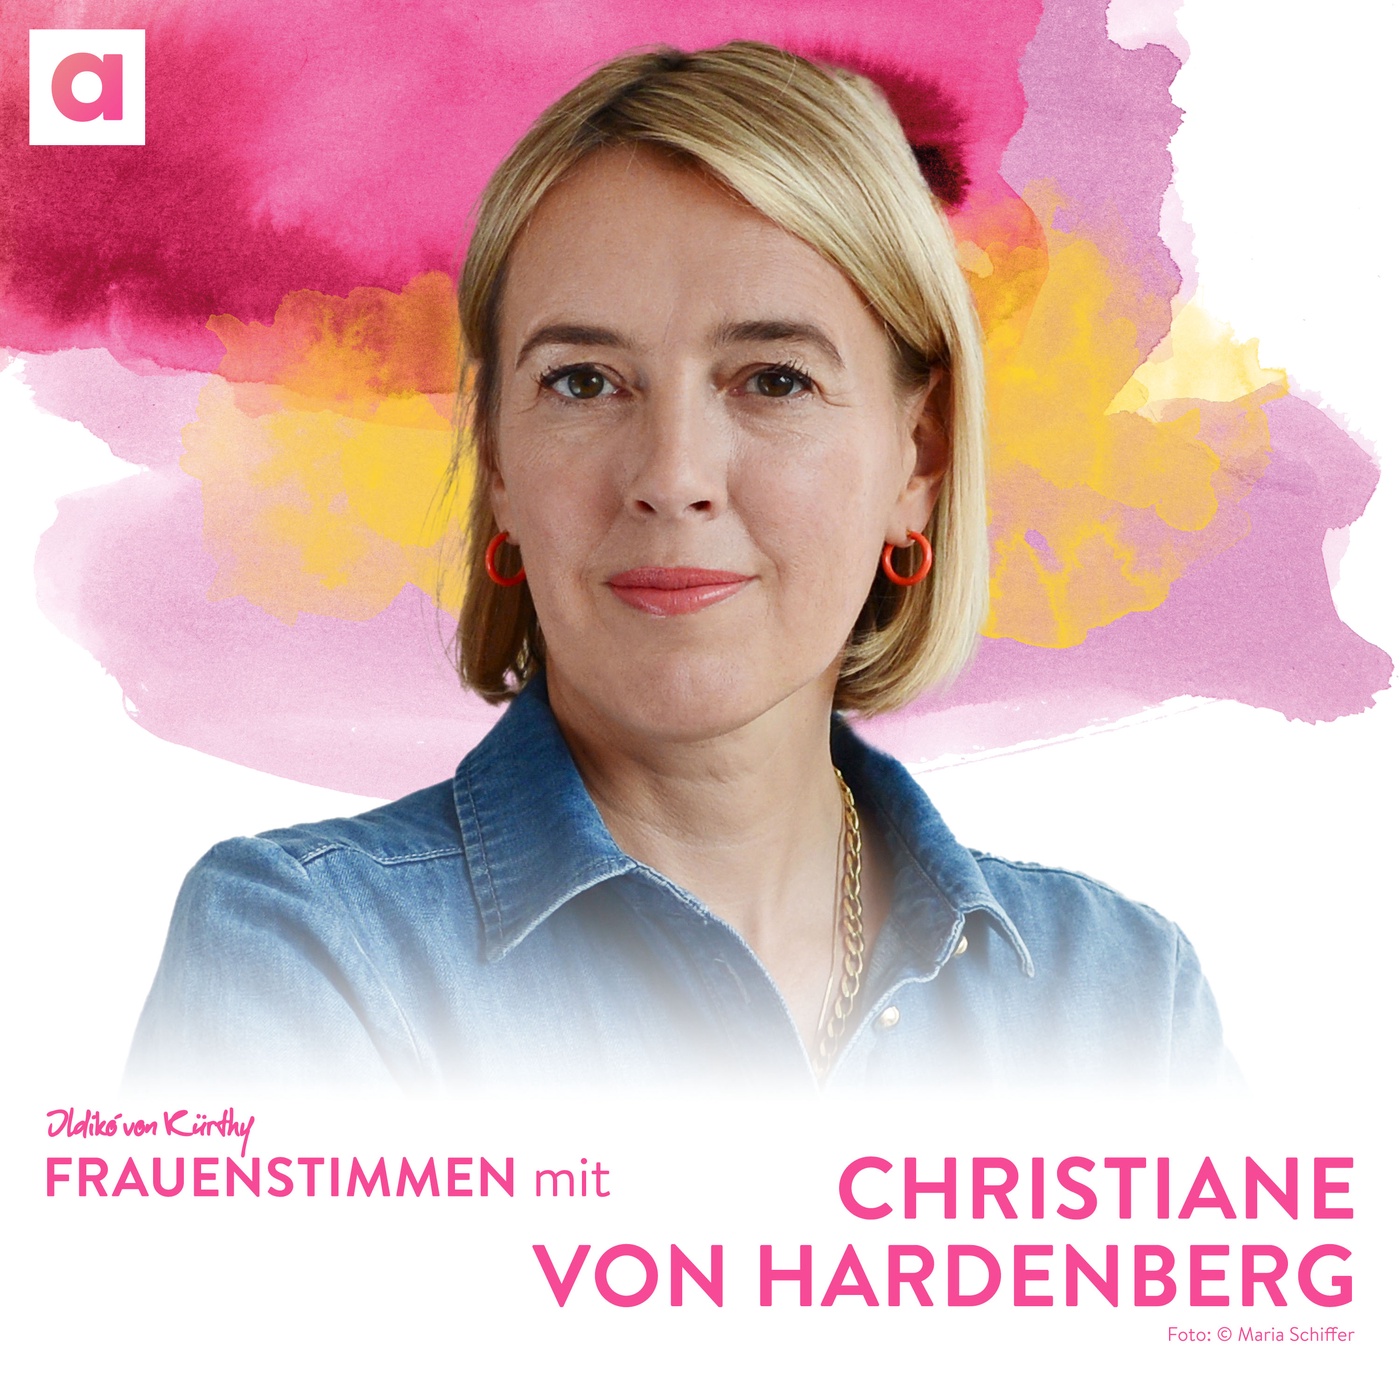 Finanzielle Unabhängigkeit mit Christiane von Hardenberg